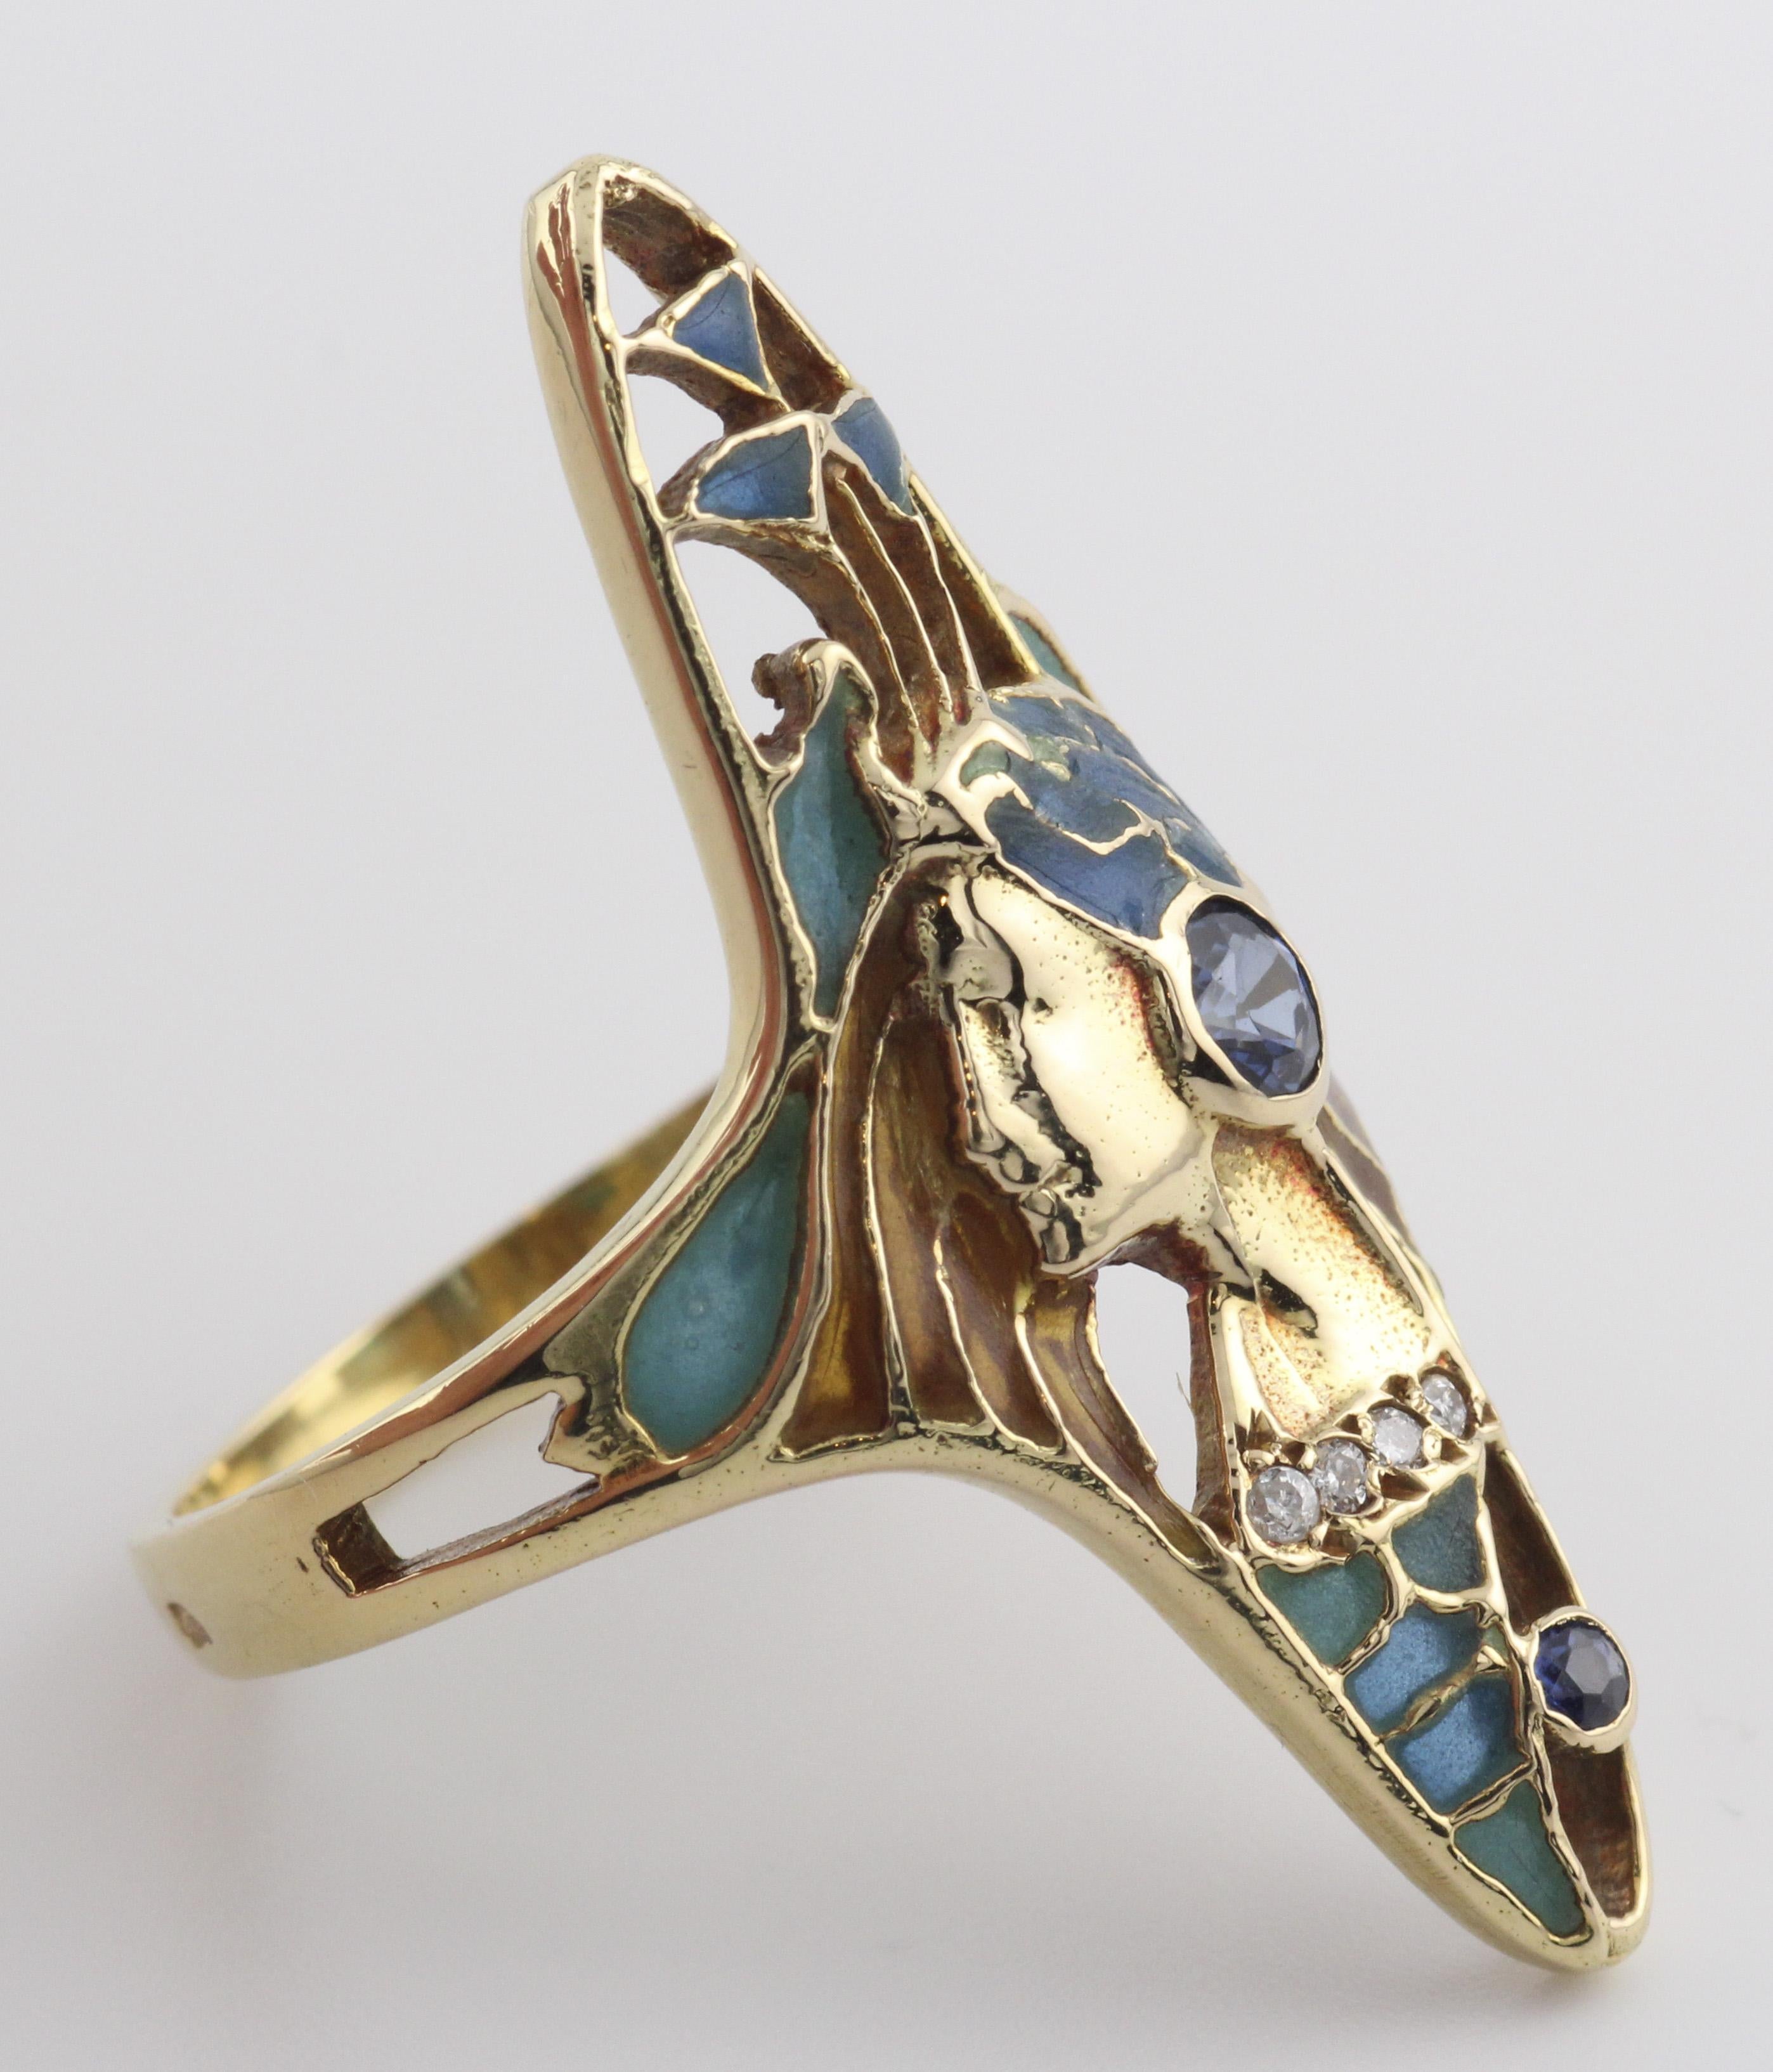 Der Art Nouveau French Sapphire Diamond Enamel 18K Gold Ring ist ein prächtiges und stimmungsvolles Schmuckstück, das die exquisite Kunstfertigkeit und bezaubernde Ästhetik der Art Nouveau Bewegung verkörpert. Dieser Ring zeigt ein wunderschönes